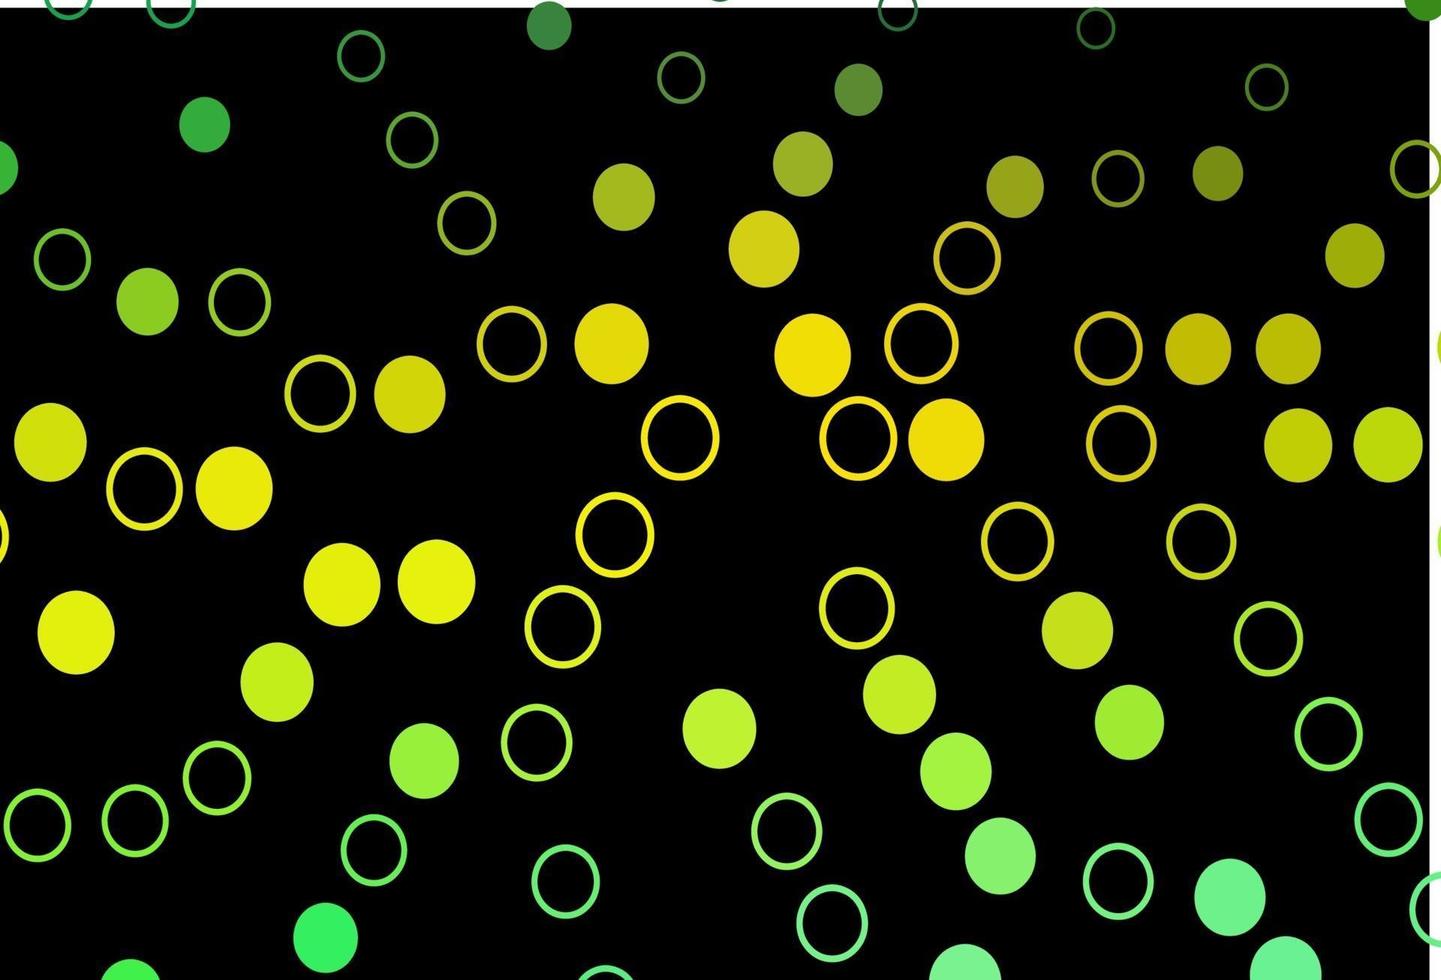 mörkgrönt, gult vektormönster med sfärer. vektor